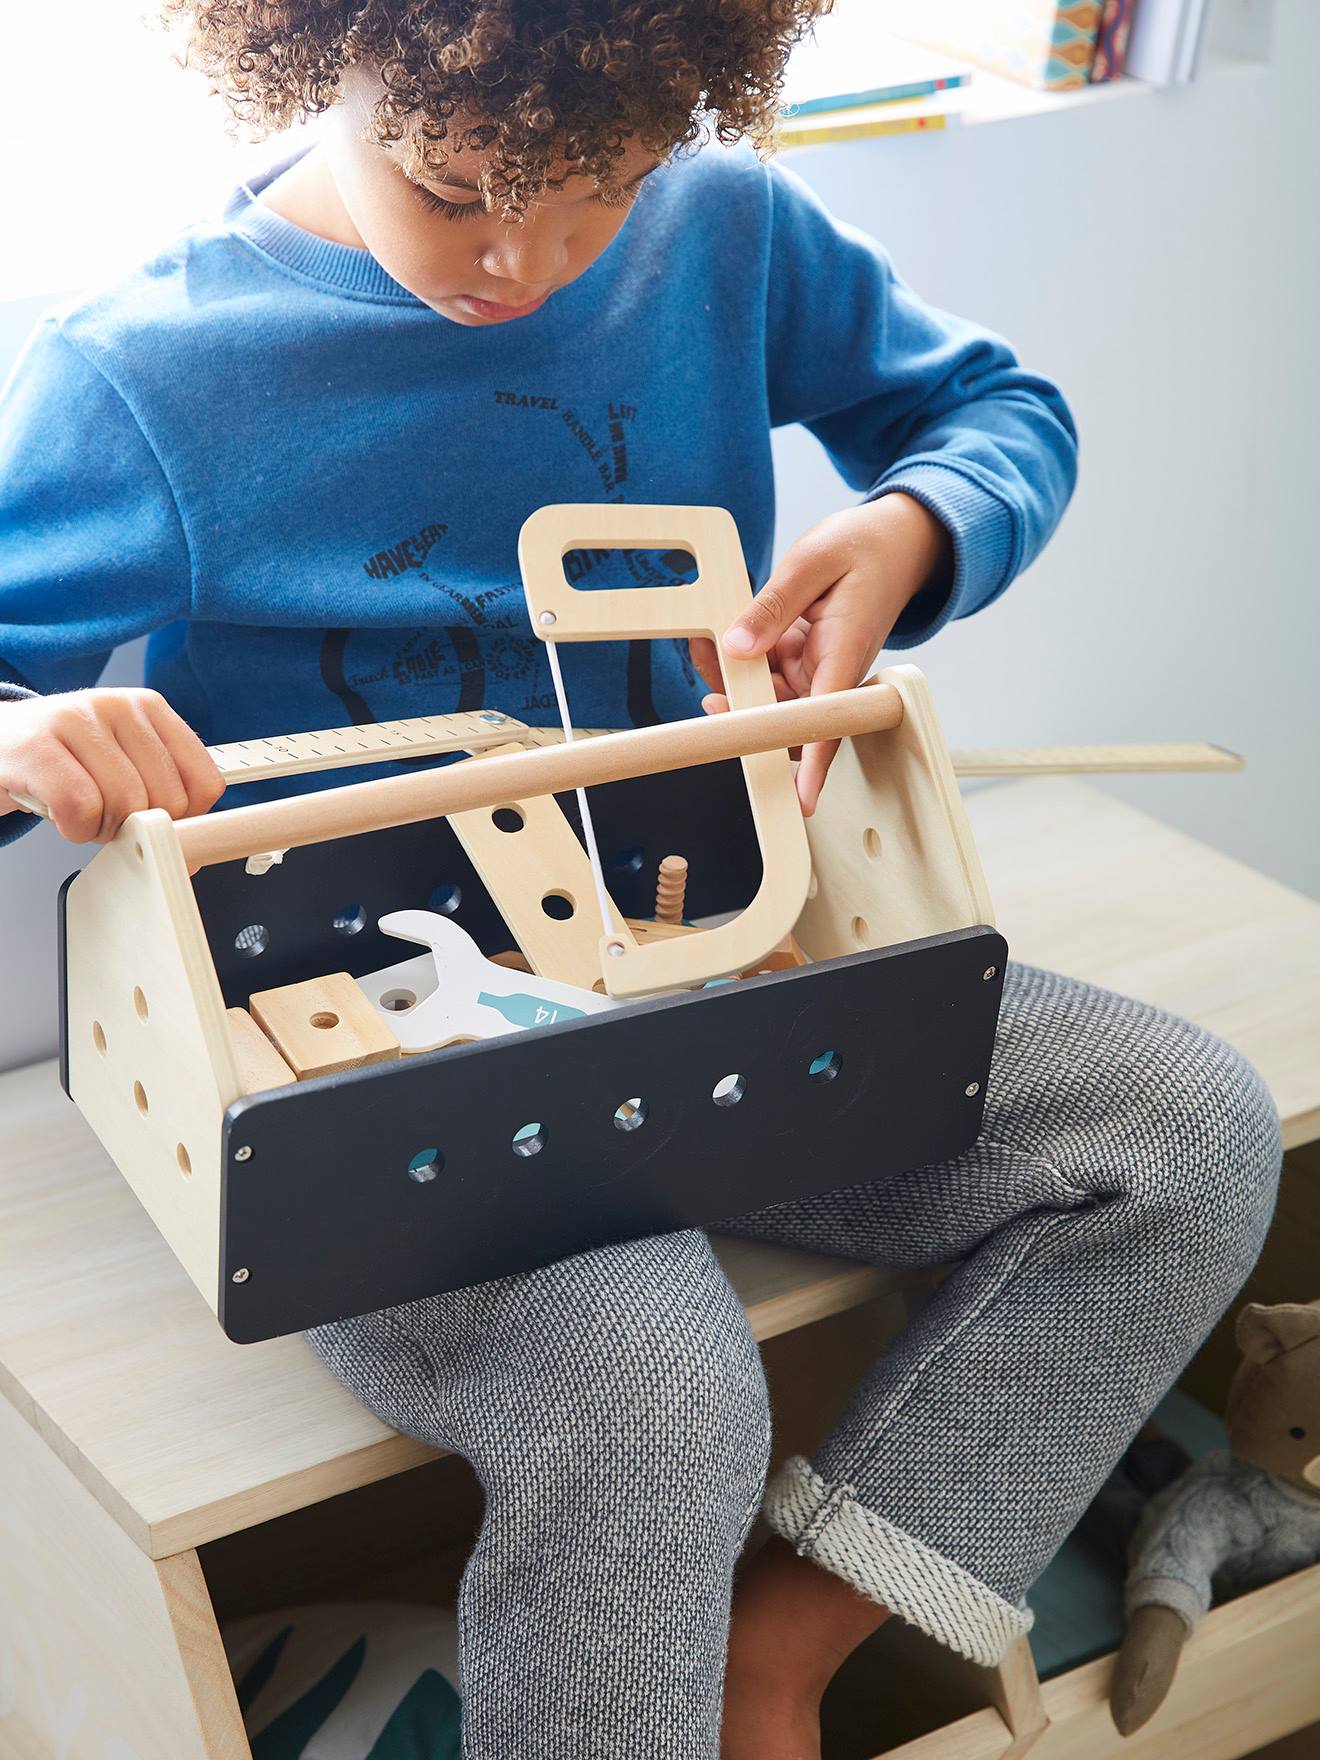 Boîte à outils pour enfants - Boîte à outils de jeu - Ensemble d